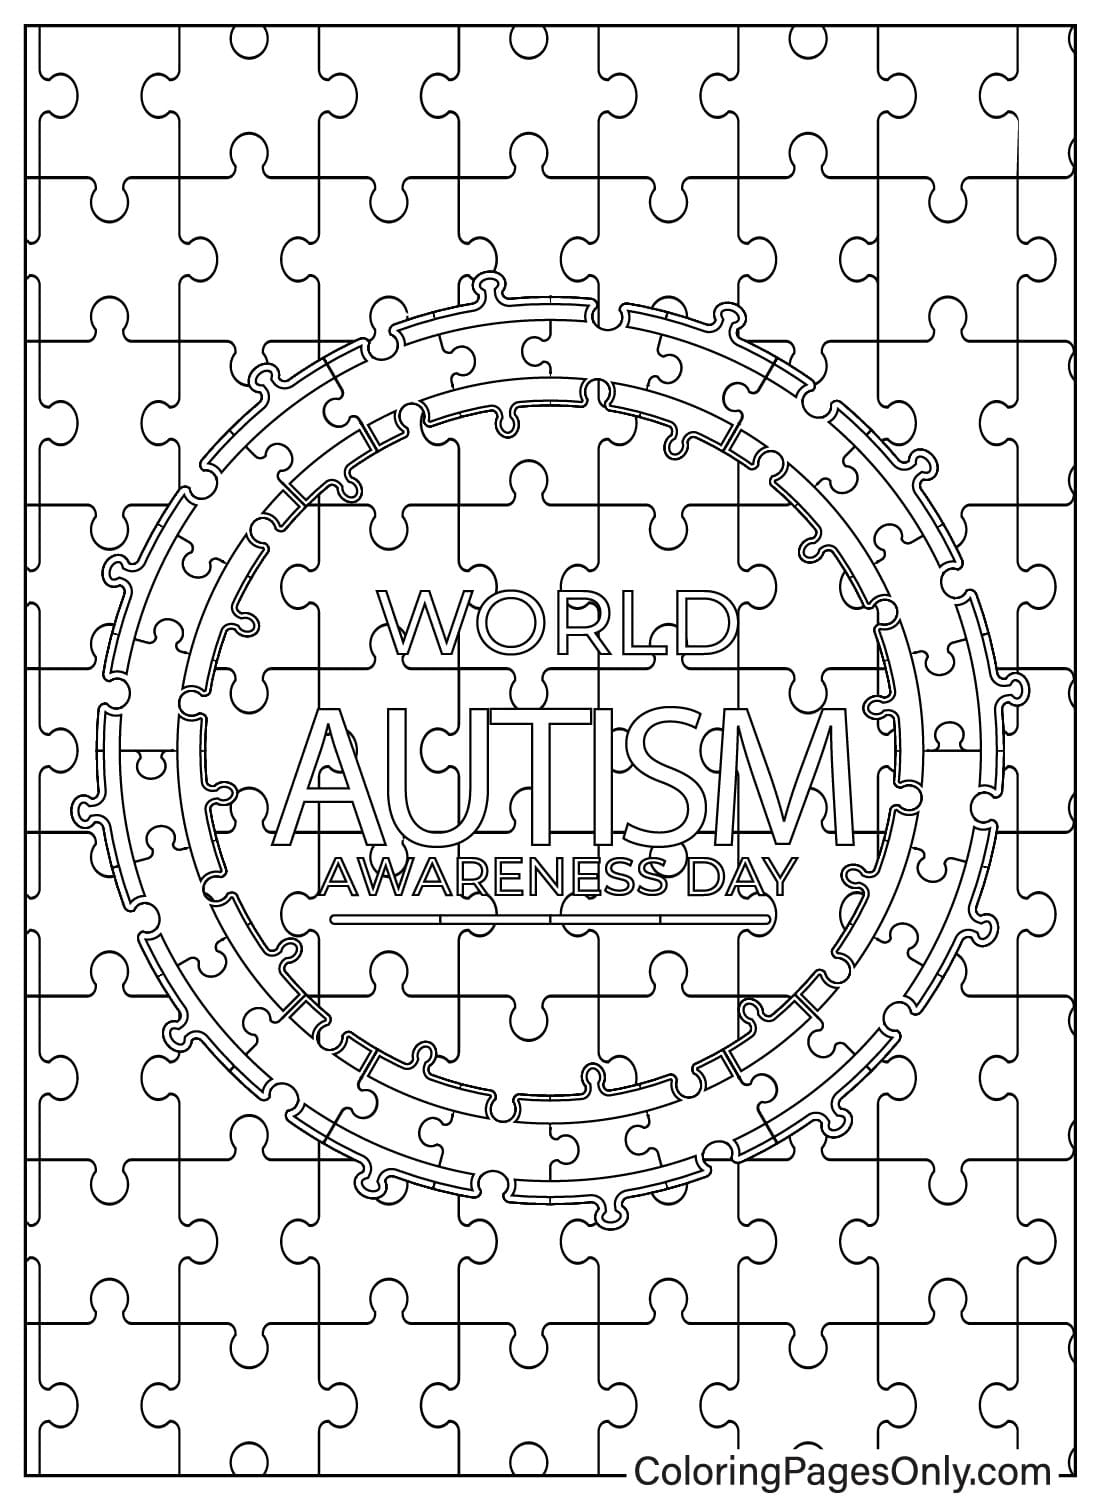 Раскраска, посвященная аутизму, от Всемирного дня распространения информации об аутизме